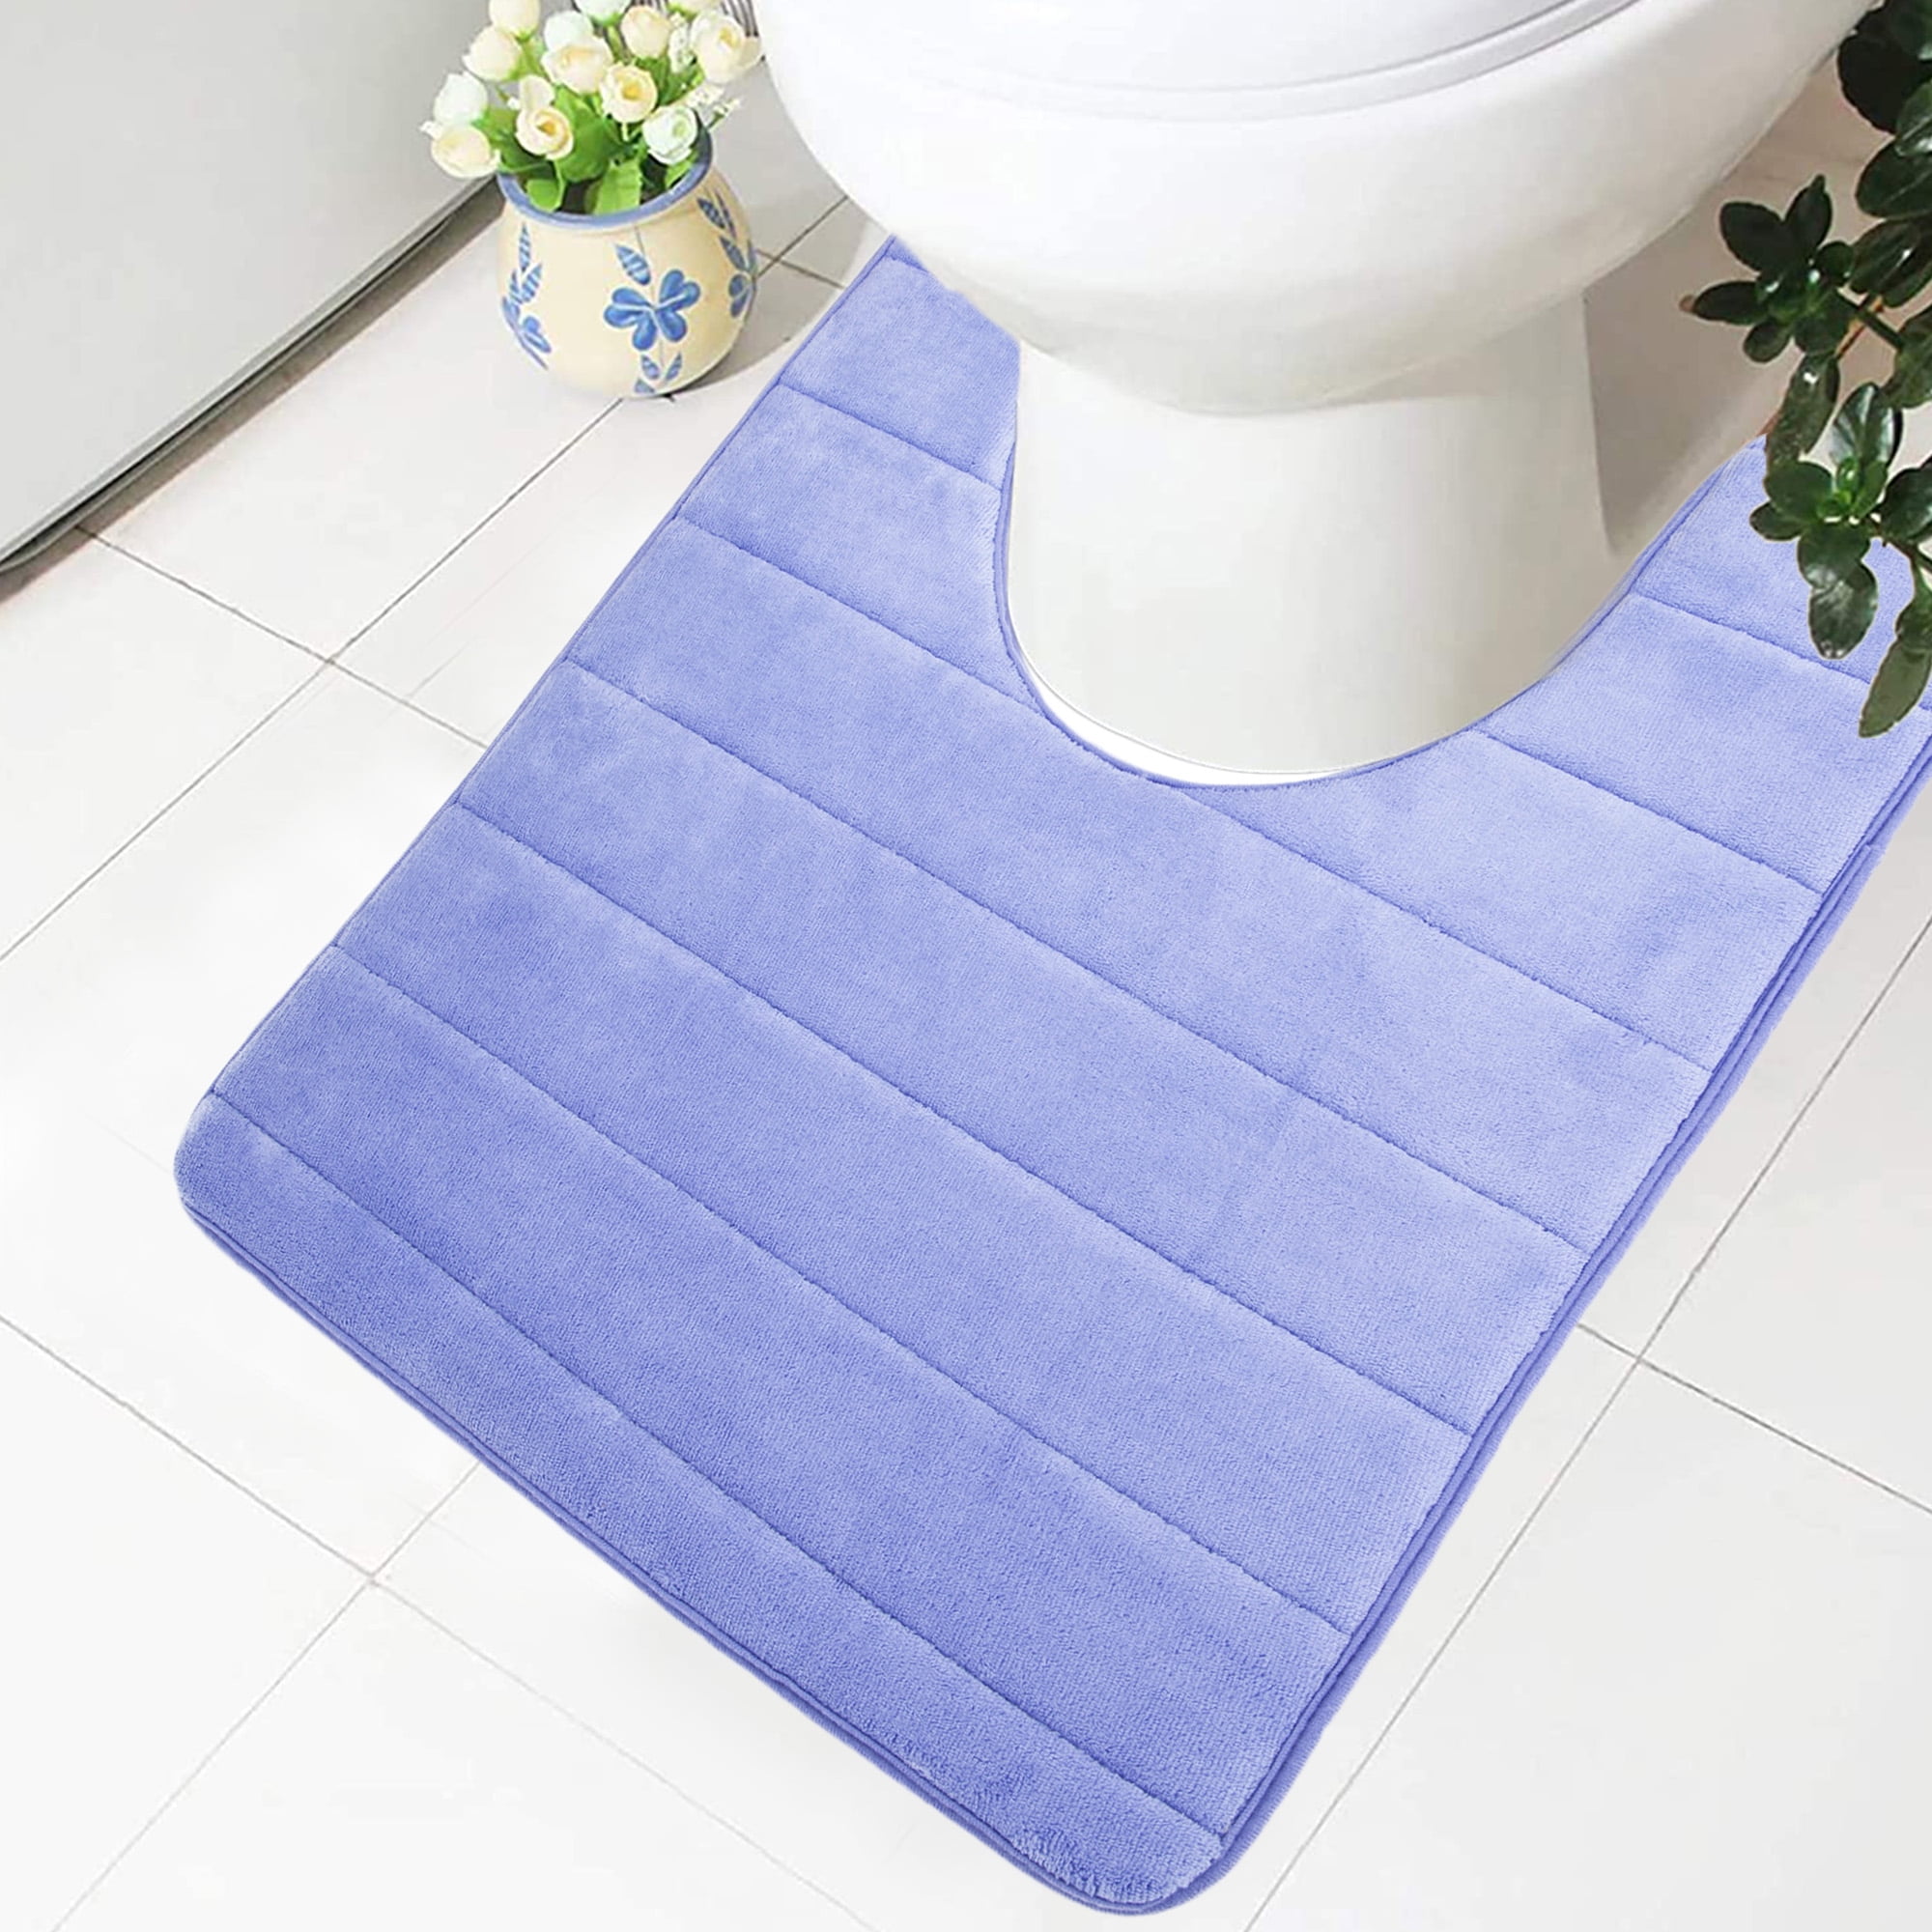 Details about   3 Pieces Plush Bathroom Rugs Set Includes U-Shaped Contour Toilet Mat,ToiletLid 